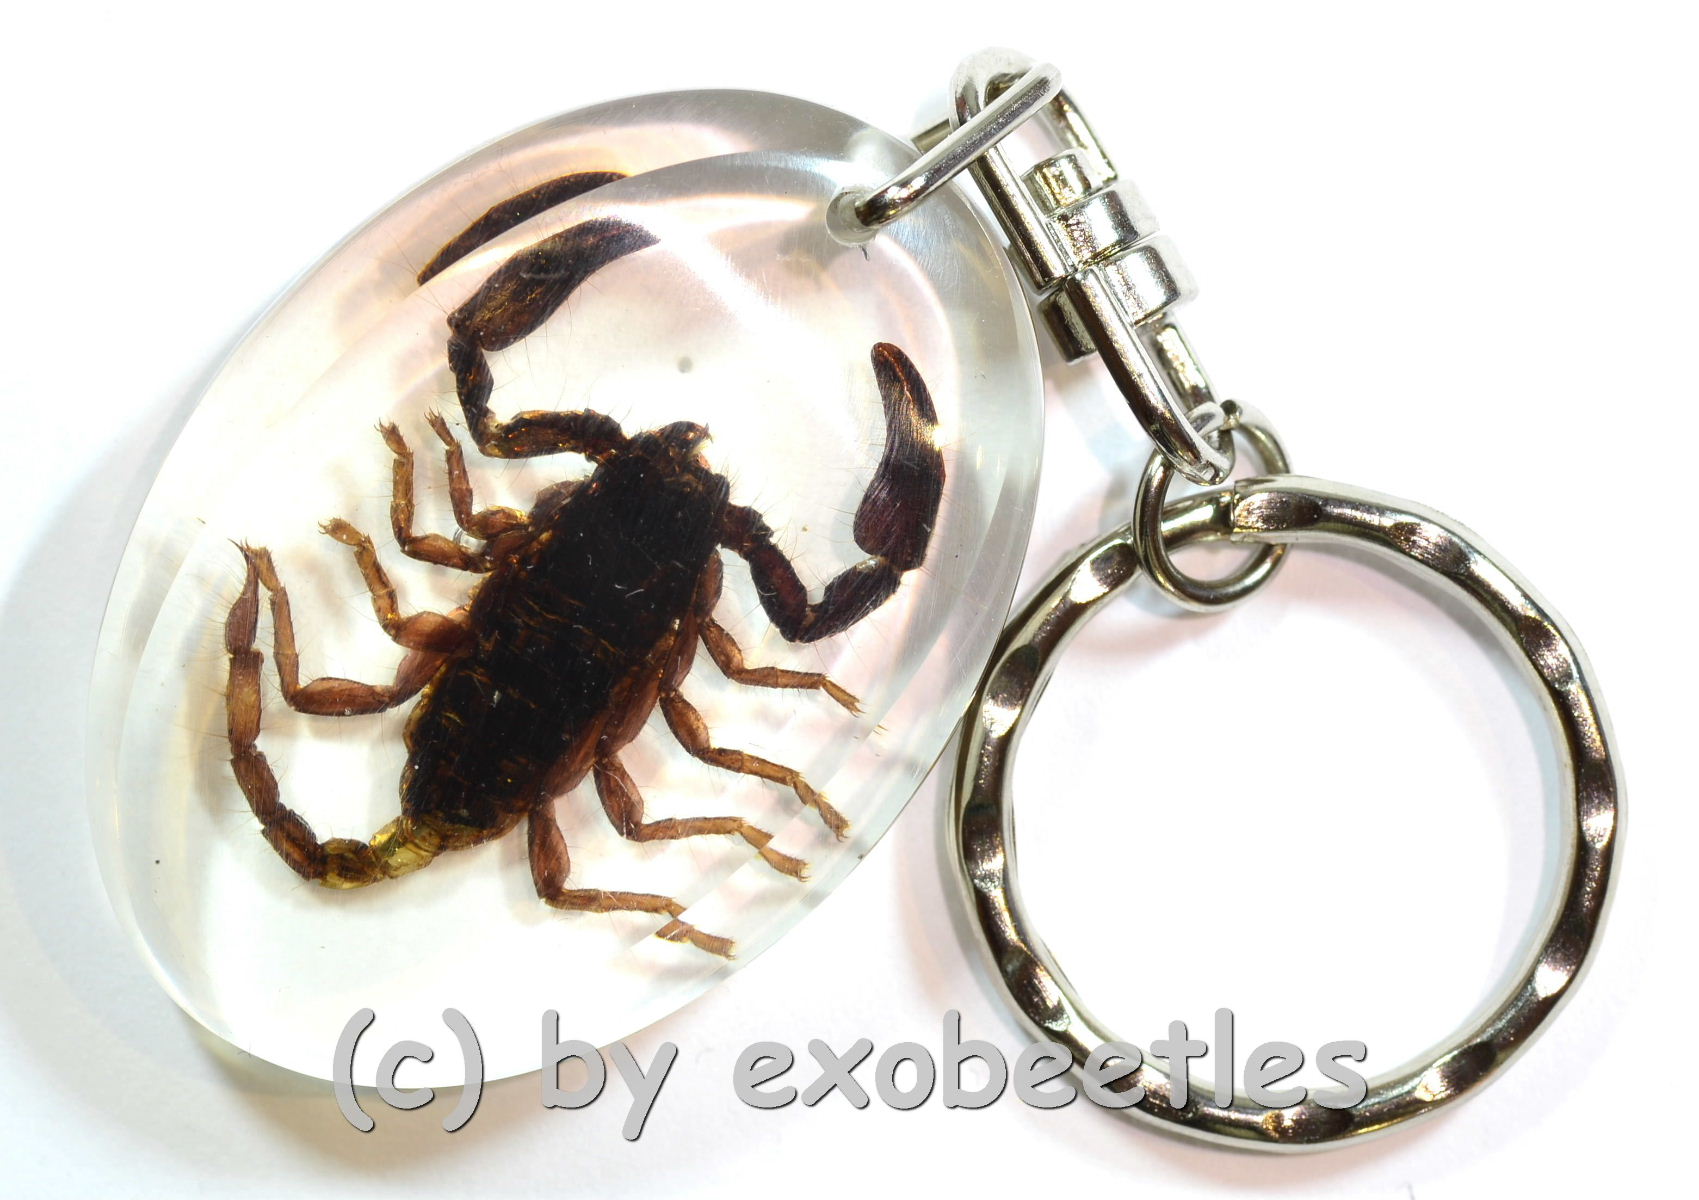 بريق الهبوط استوائي  Schlüsselanhänger Skorpion in Schlüsselanhänger | Insekten aus aller Welt  online kaufen bei exobeetles dem Insektenhändler